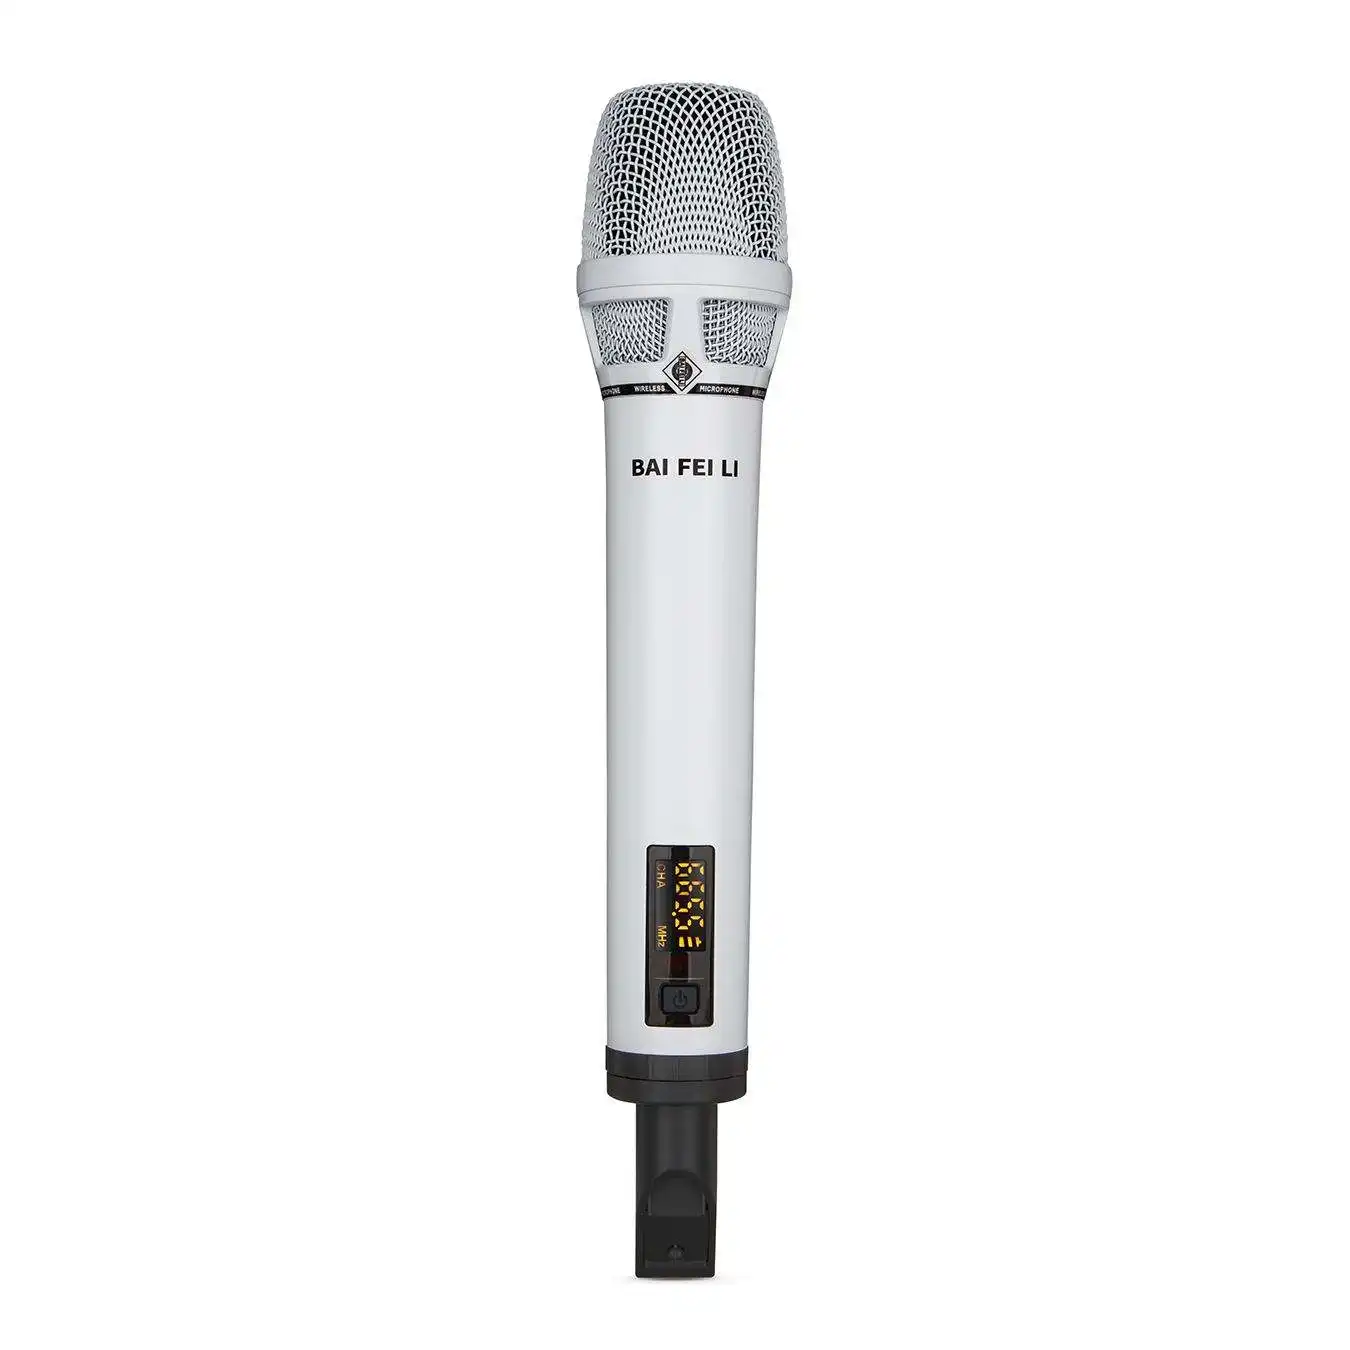 Baifeili TA100B Microfone portátil USB sem fio recarregável UHF para conferência e gravação de microfones